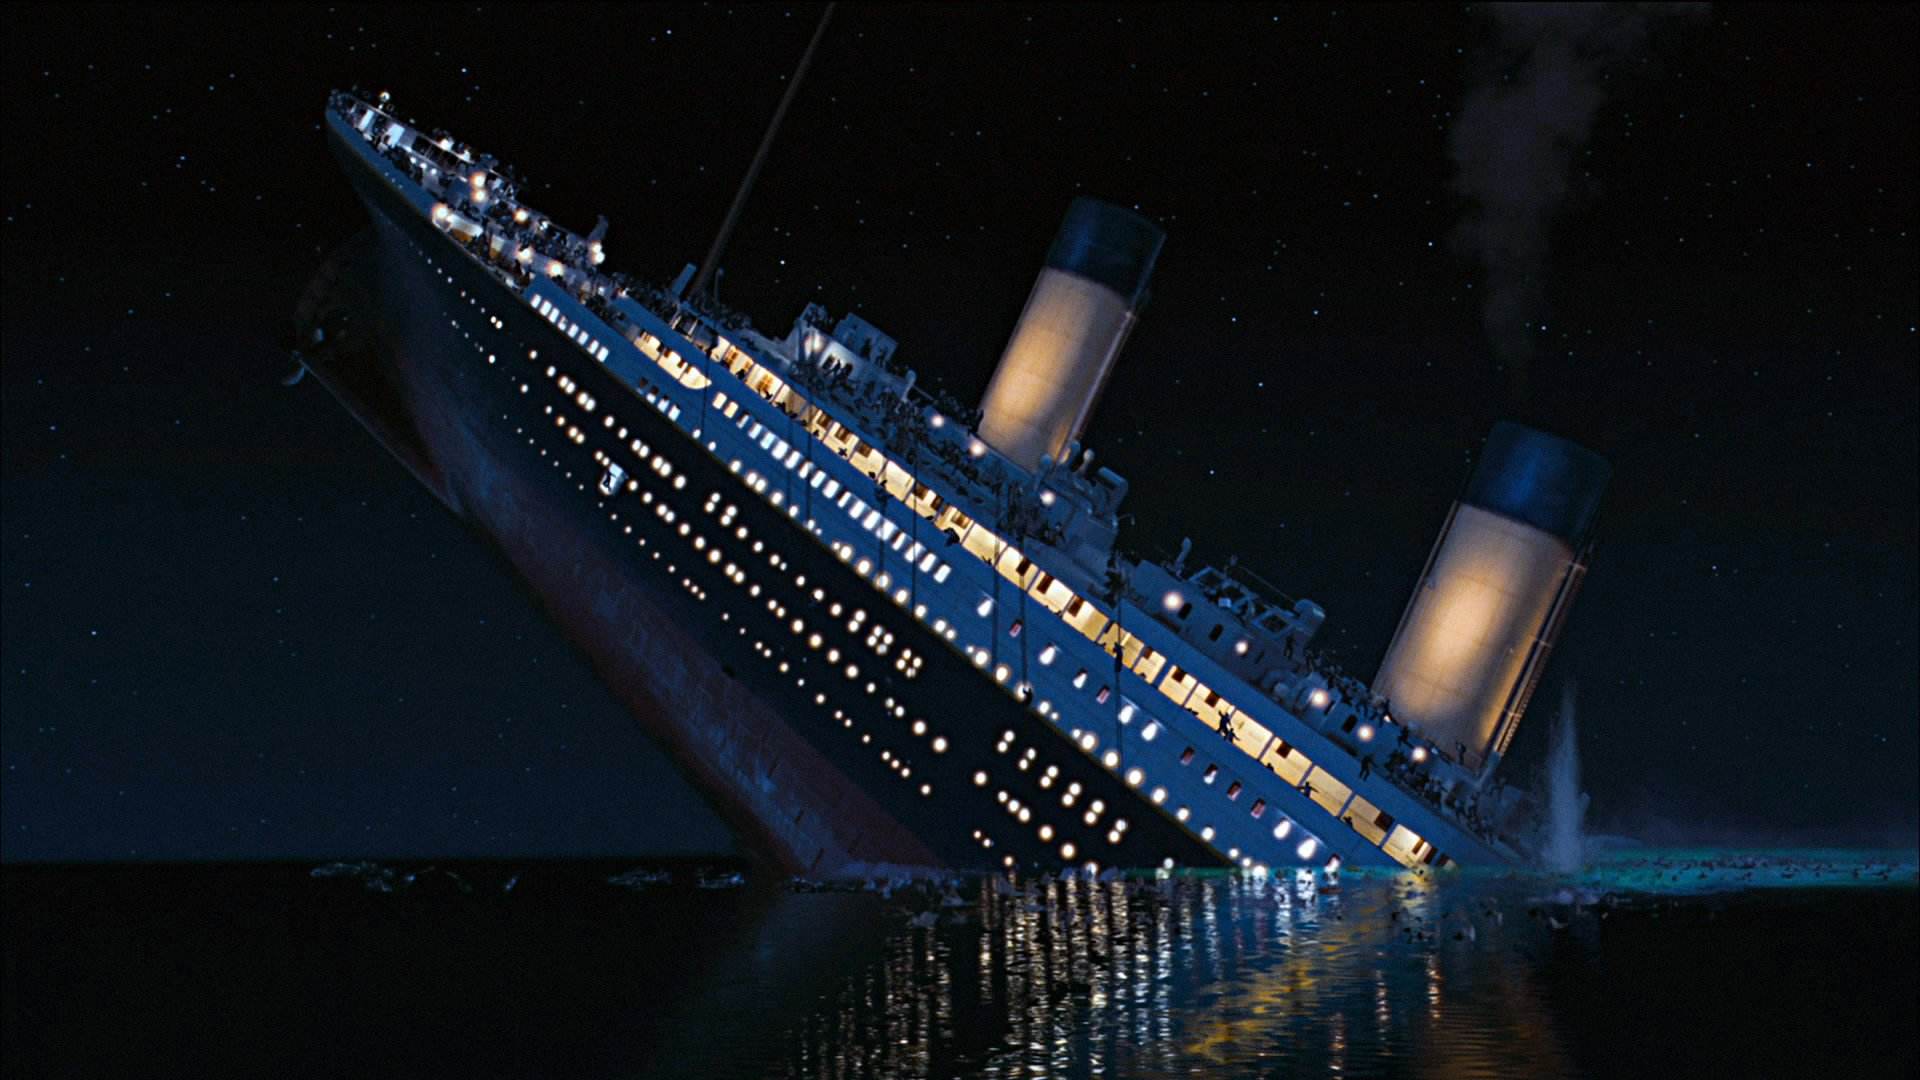 揭秘:泰坦尼克号沉没之谜,非天灾而是因人性贪婪导致的人祸